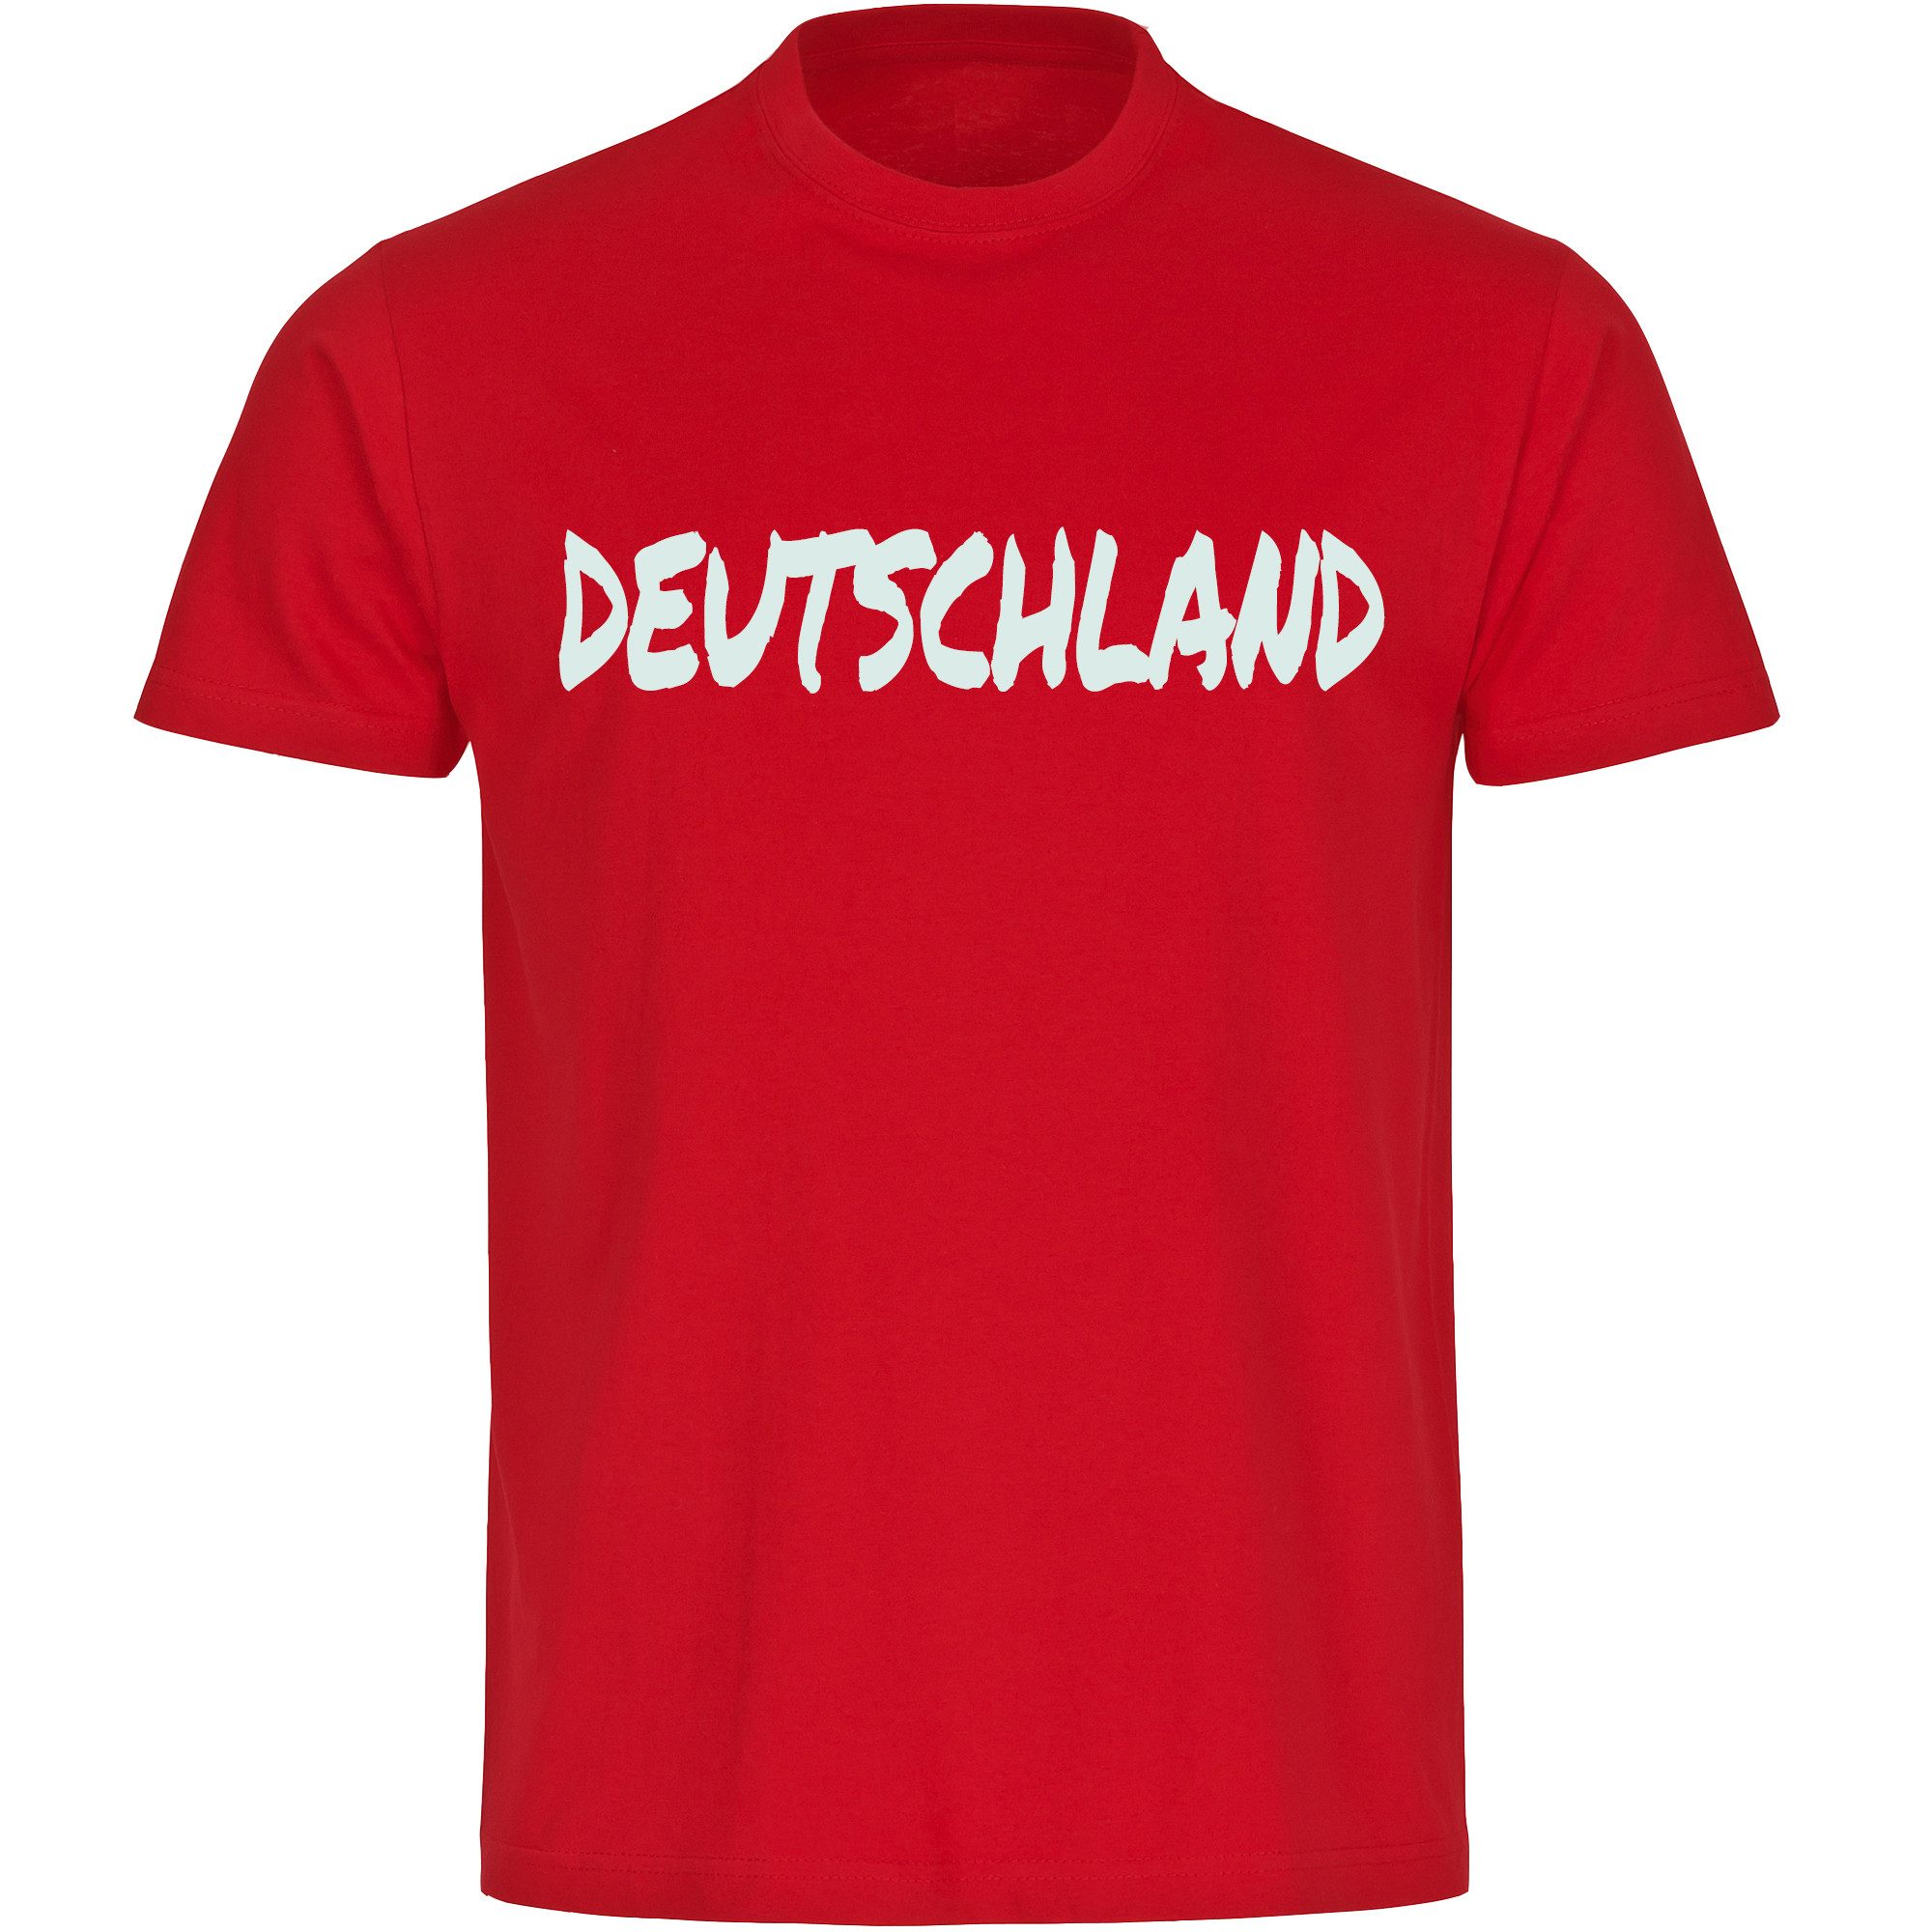 multifanshop T-Shirt Kinder Deutschland - Textmarker - Boy Girl